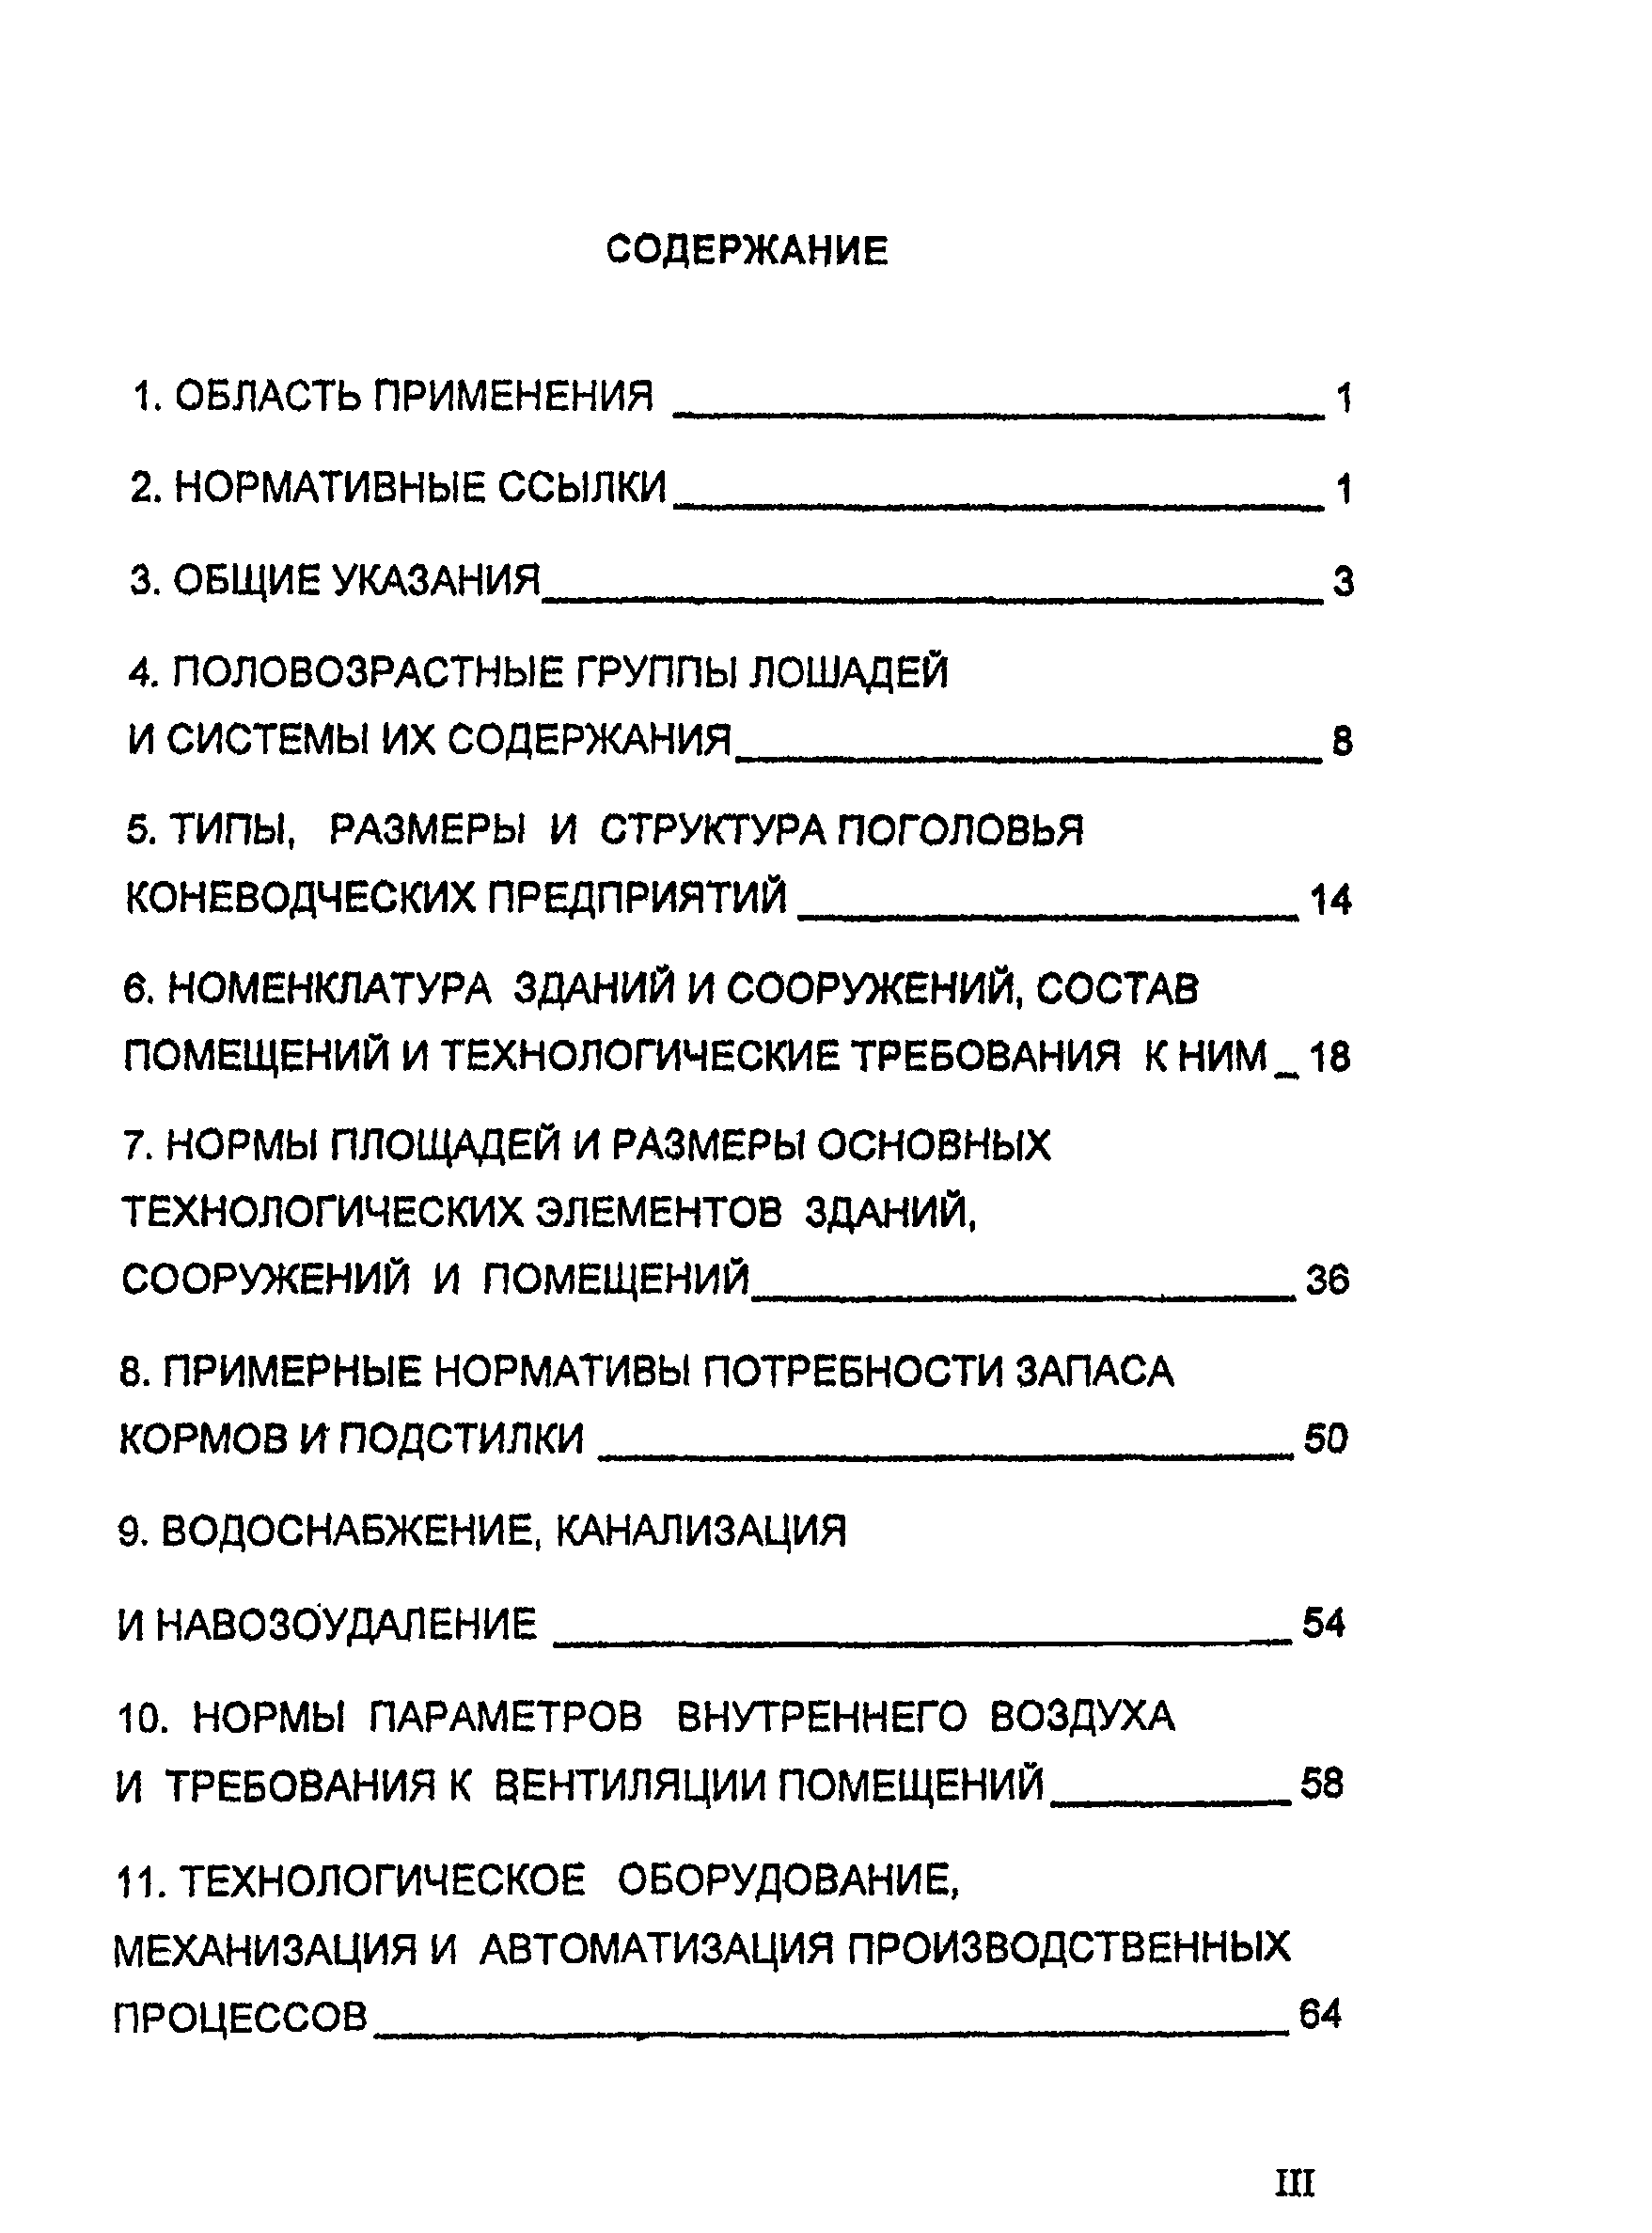 НТП-АПК 1.10.04.001-00